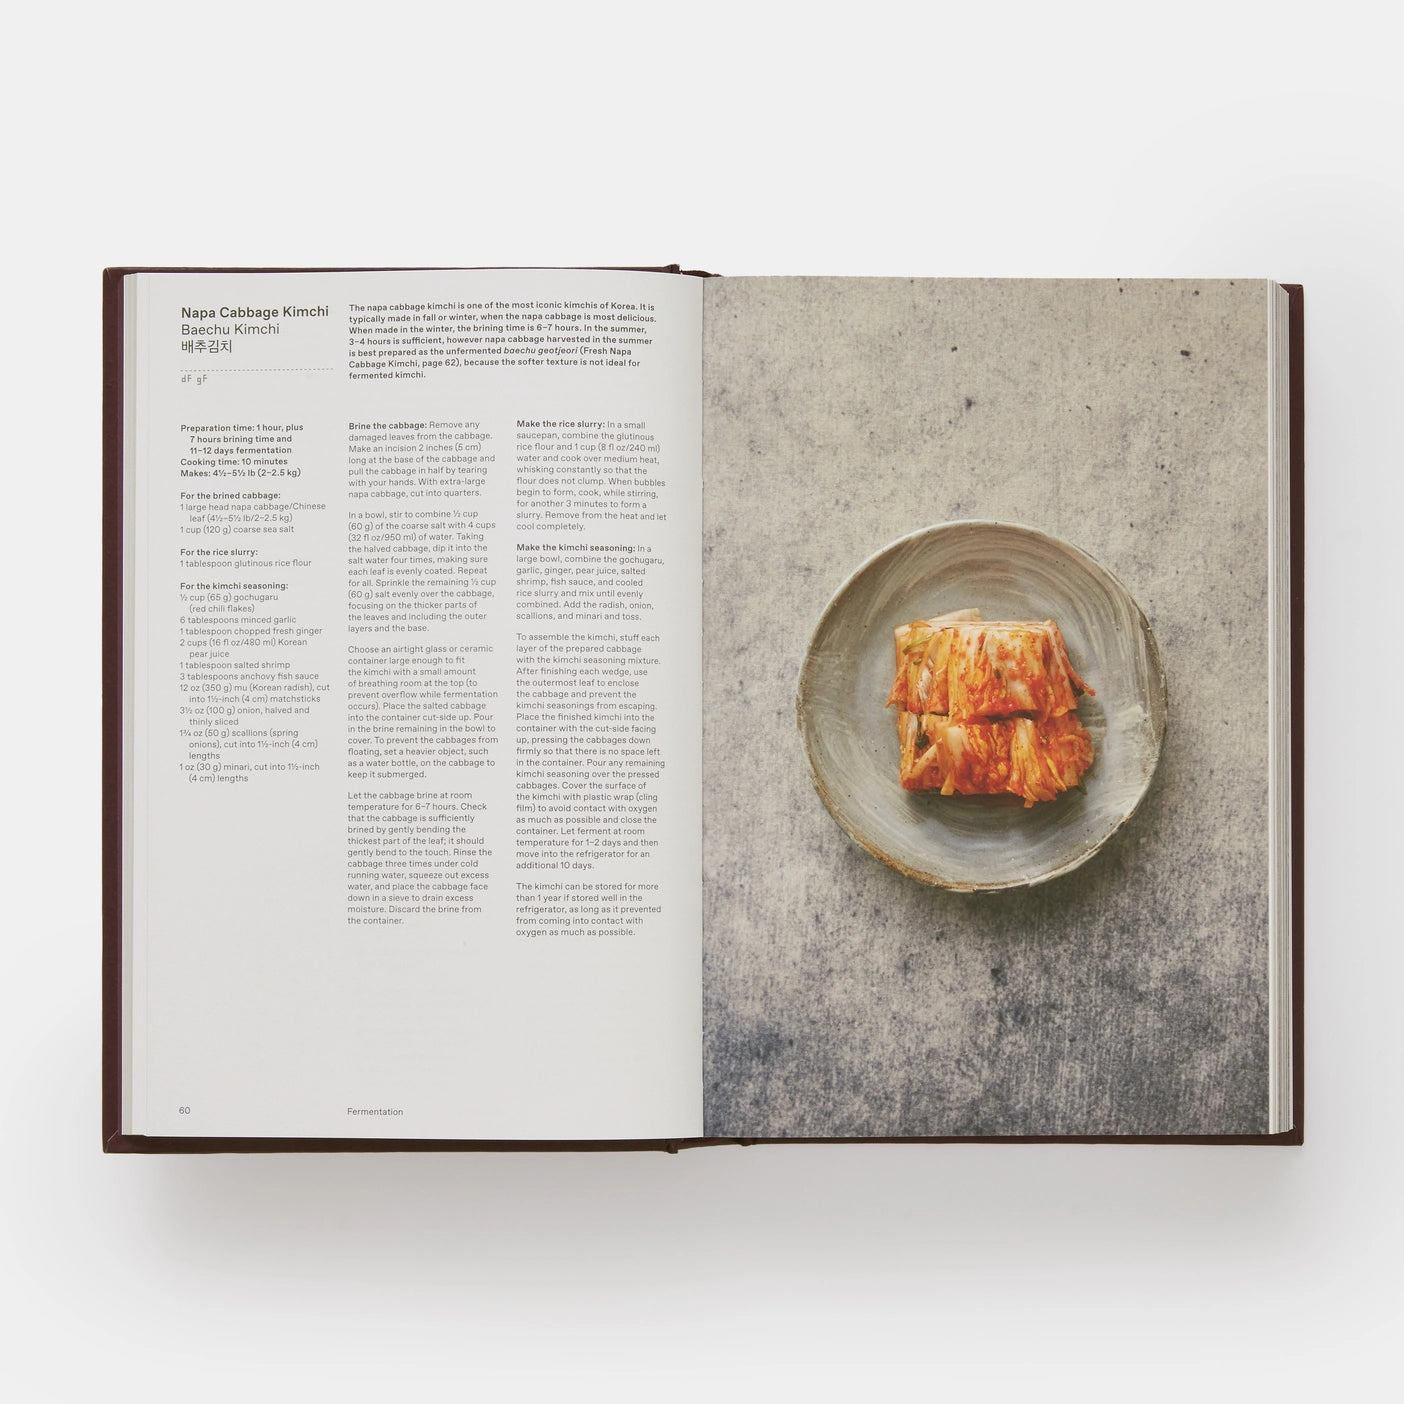 Le livre de recettes coréennes